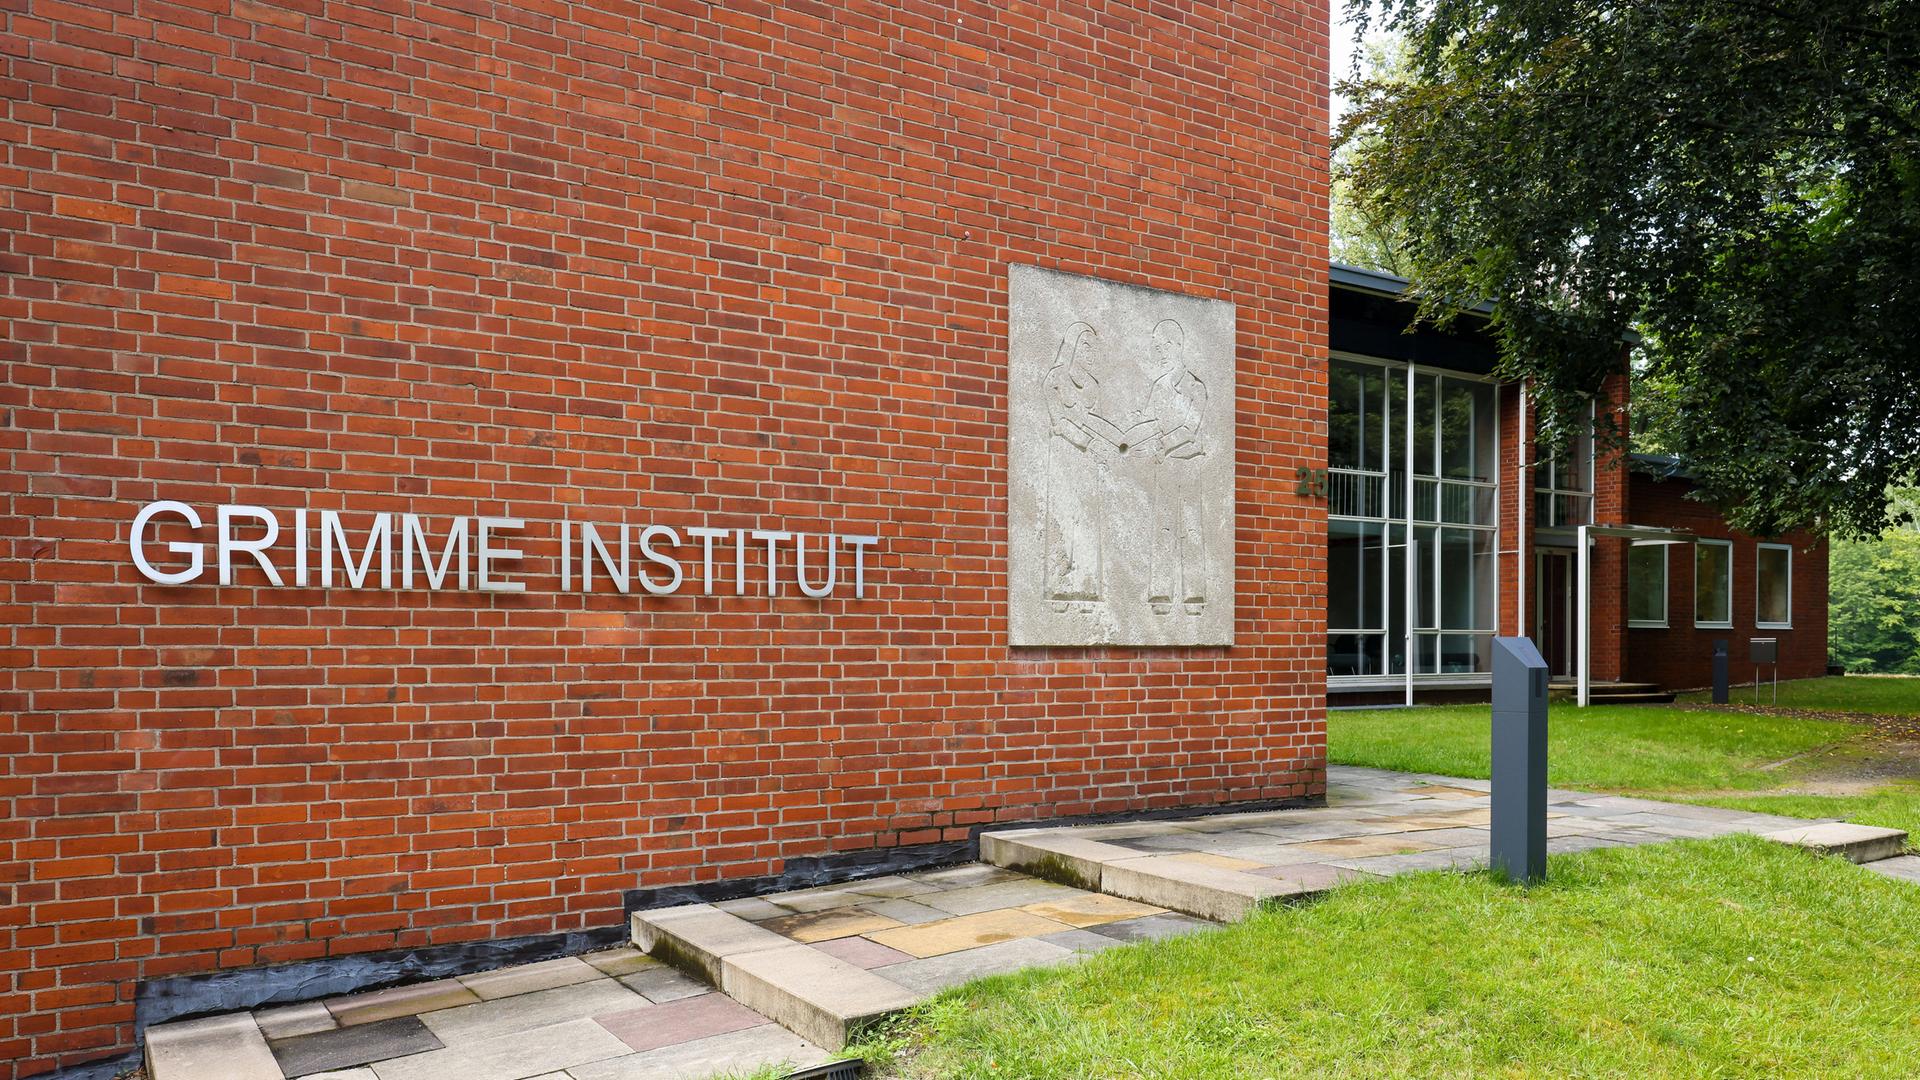 Die Ziegelstein-Fassade des Grimme-Instituts ins Marl